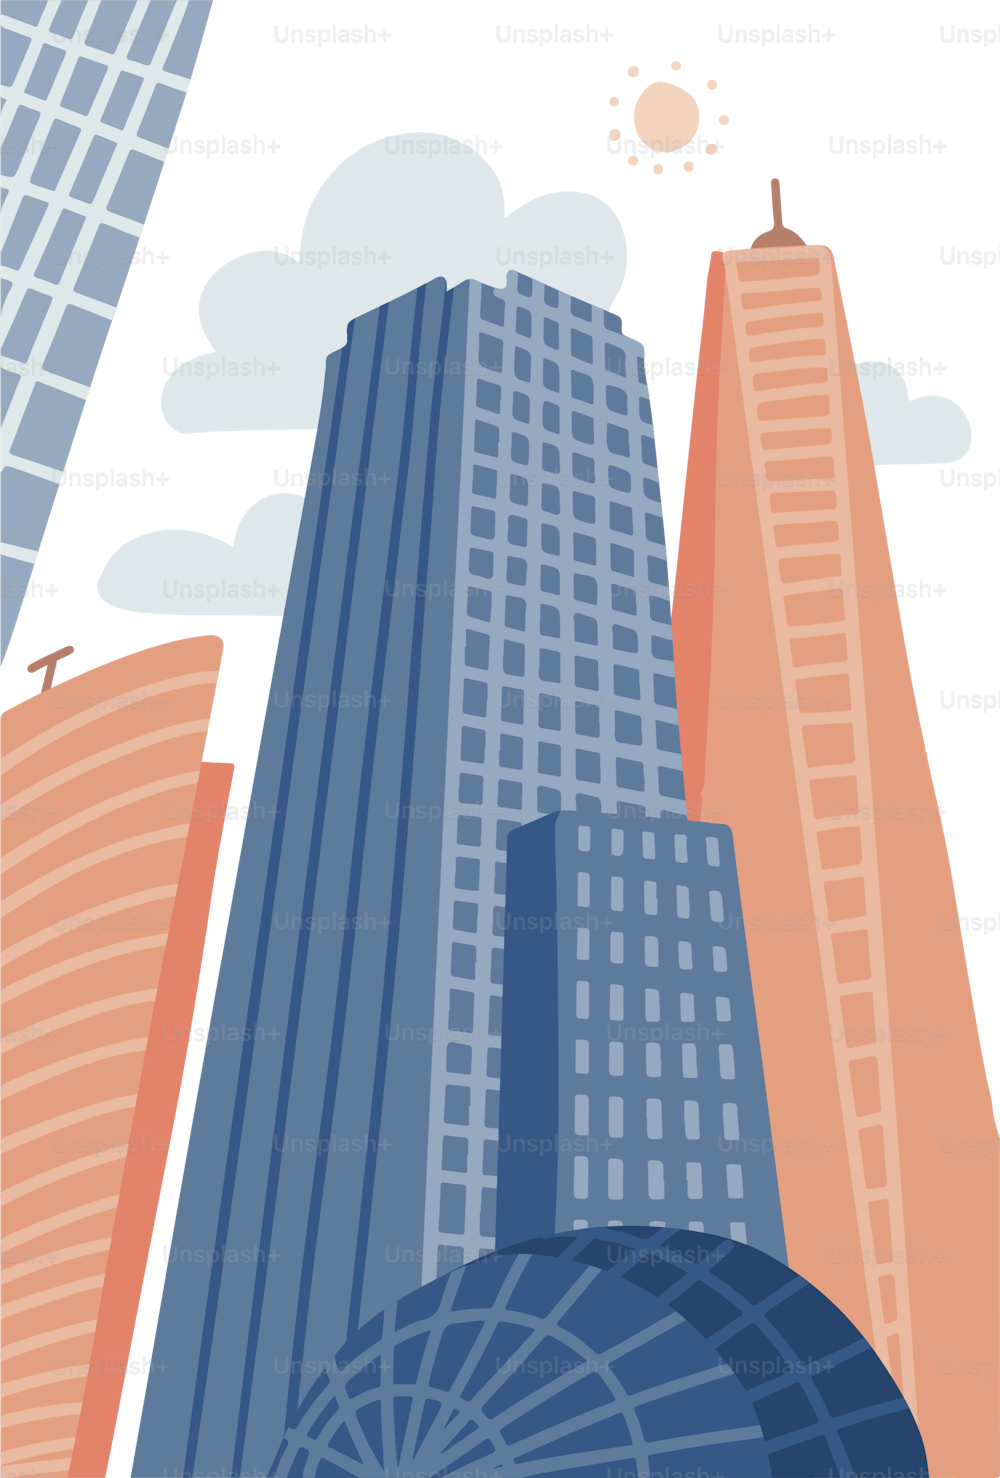 Ciudad moderna de dibujos animados en estilo plano dibujado a mano. Paisaje urbano con rascacielos, propiedad urbana. Ilustración vectorial panorama vertical, paisaje urbano moderno